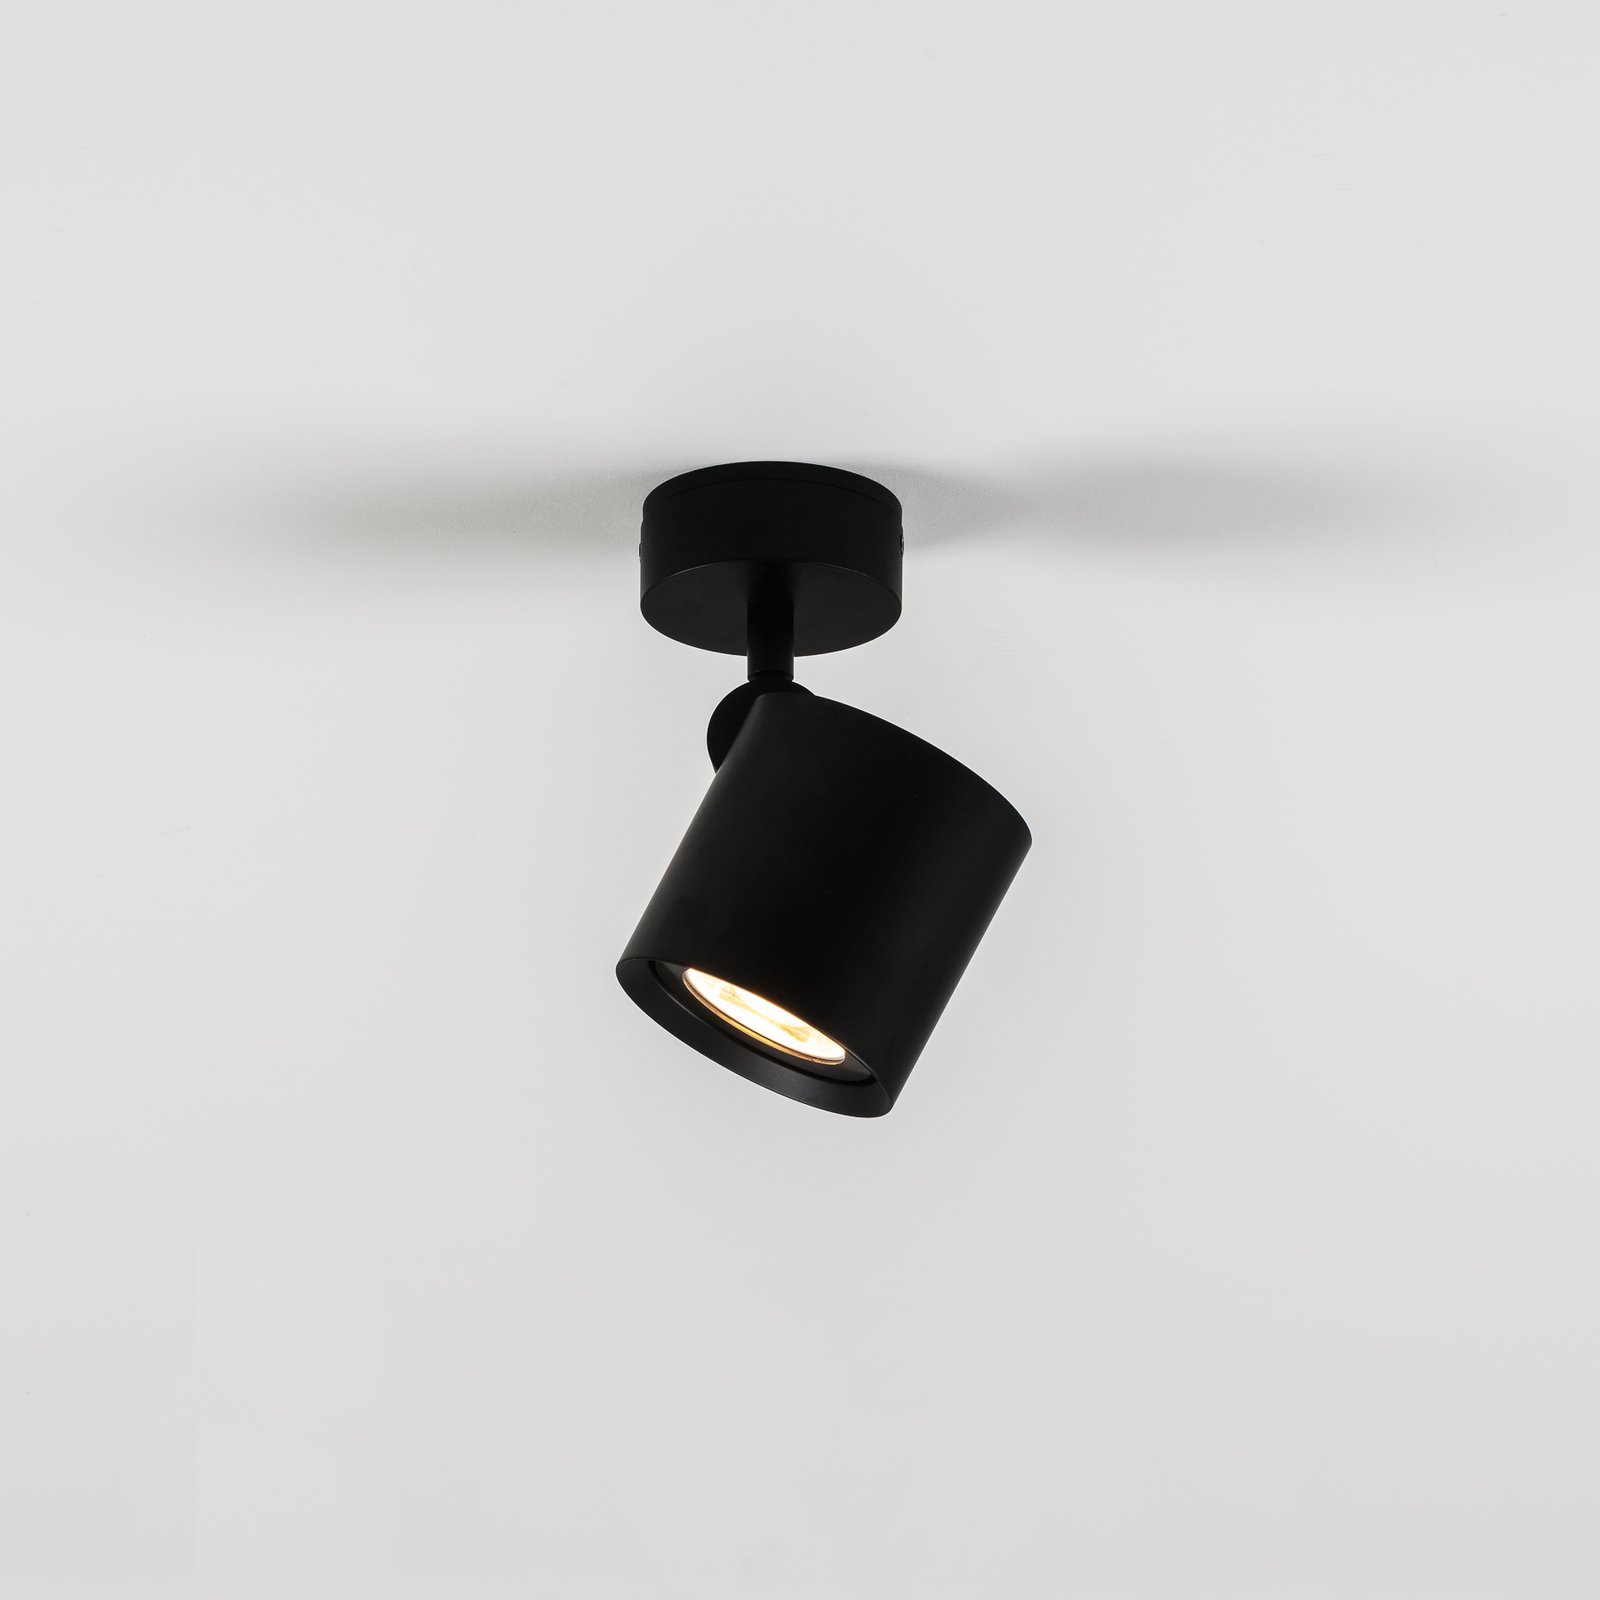 Milan Kronn taklampa 1 lampa höjd 16,6 cm svart